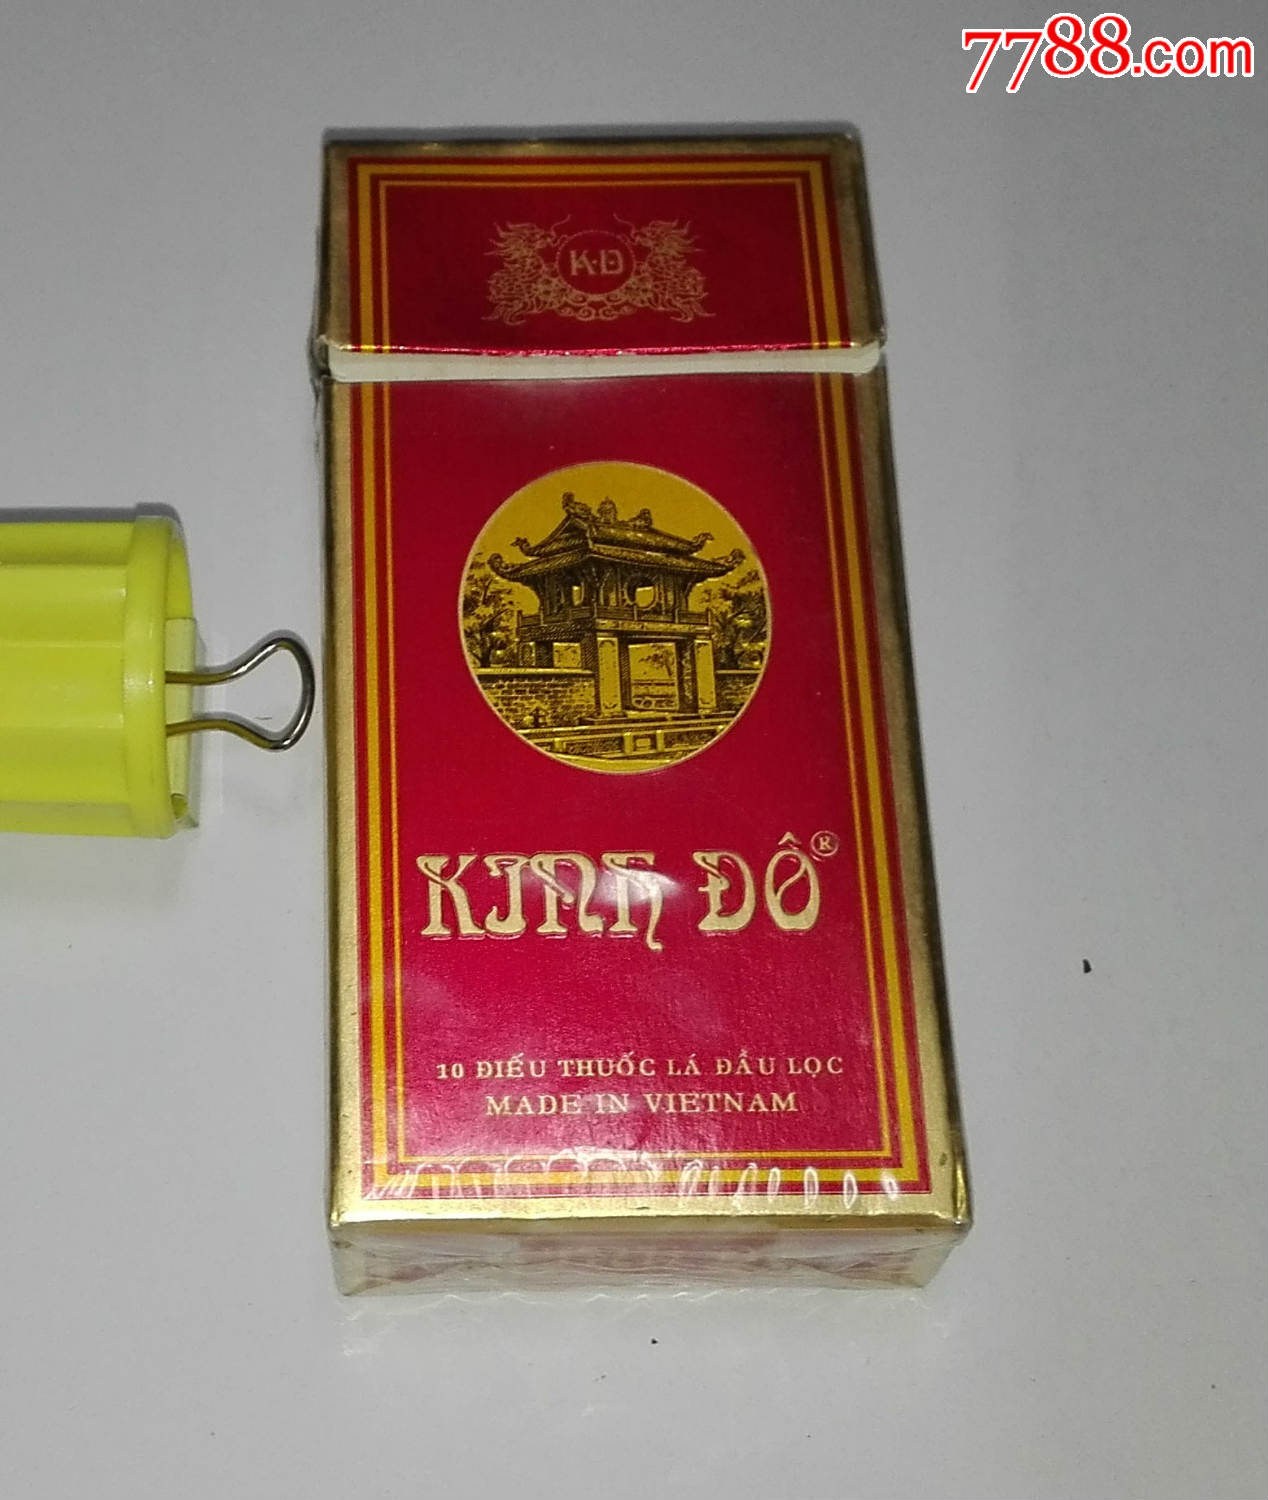 越南香烟代工厂_越南代工香烟质量到底如何_越南代工烟